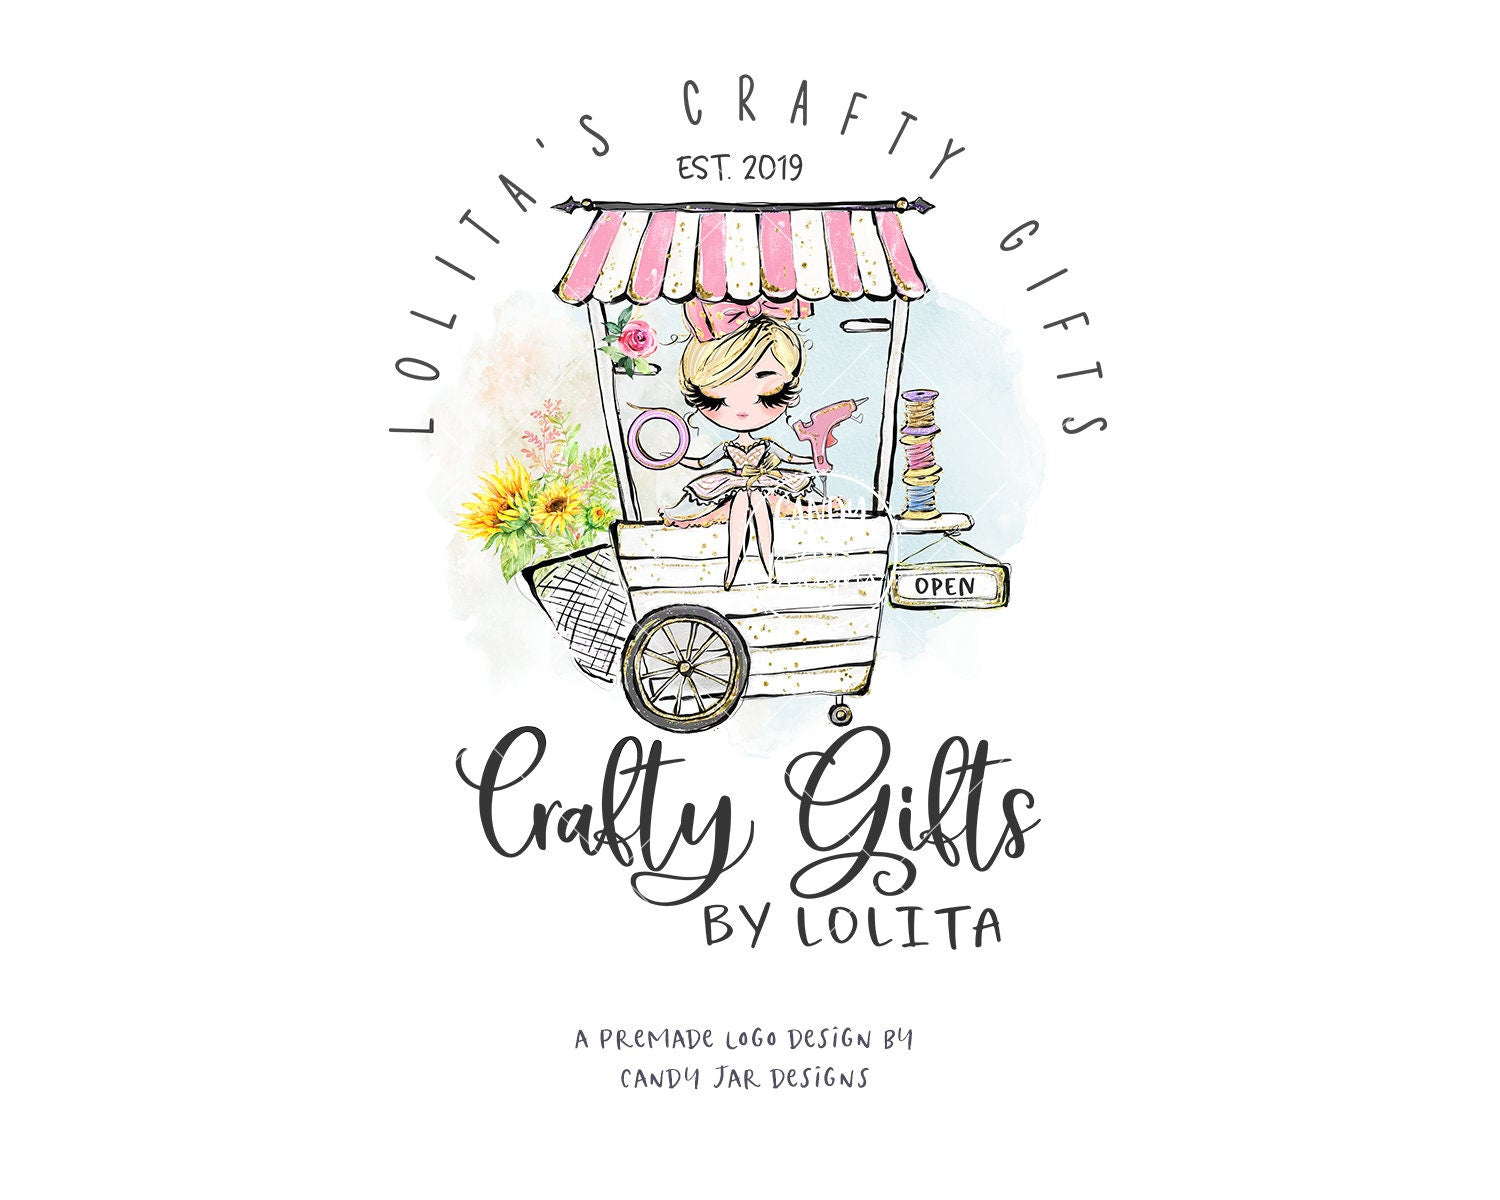 Craft Girl Logo, Vending Cart - Candy Jar Studios